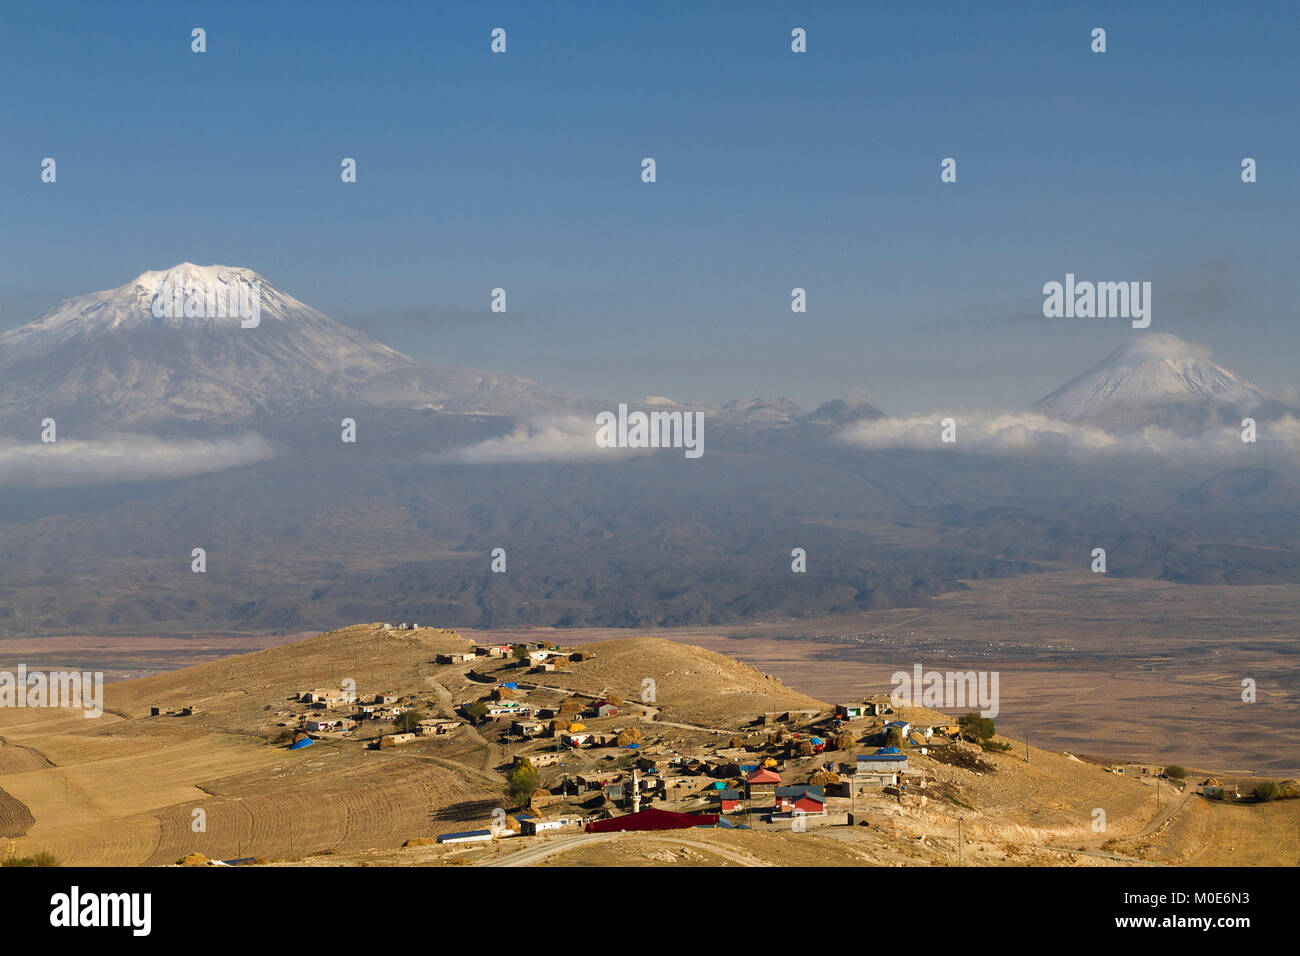 Le mont Ararat avec ses deux sommets et un village kurde, en Turquie. Banque D'Images